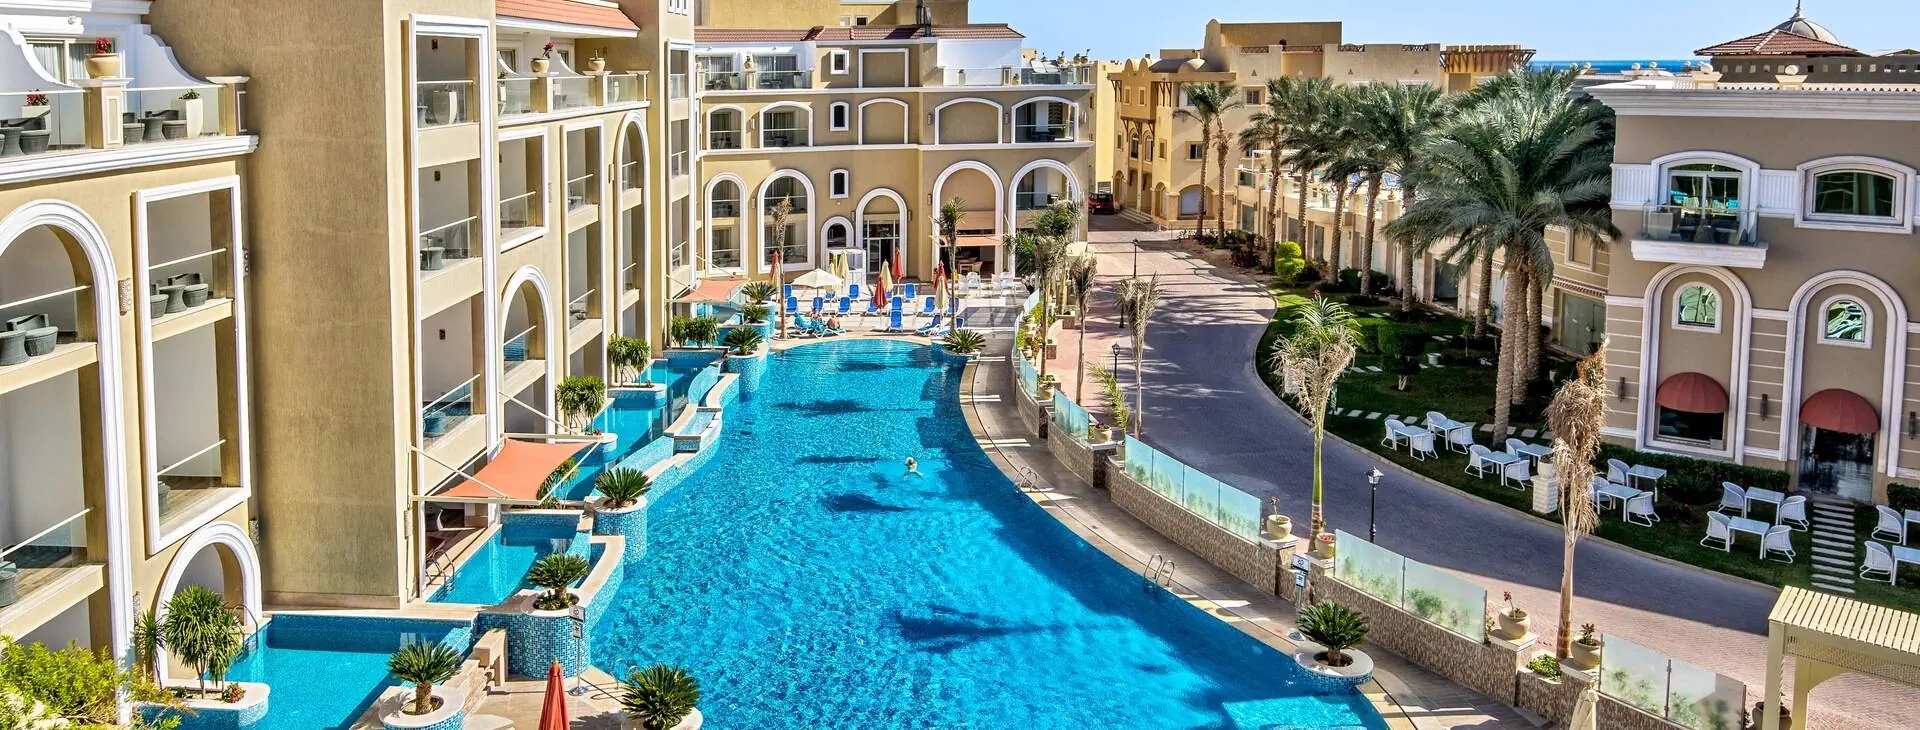 Egipt Hurghada Sahl Hasheesh KaiSol Romance Resort - Sahl Hasheesh